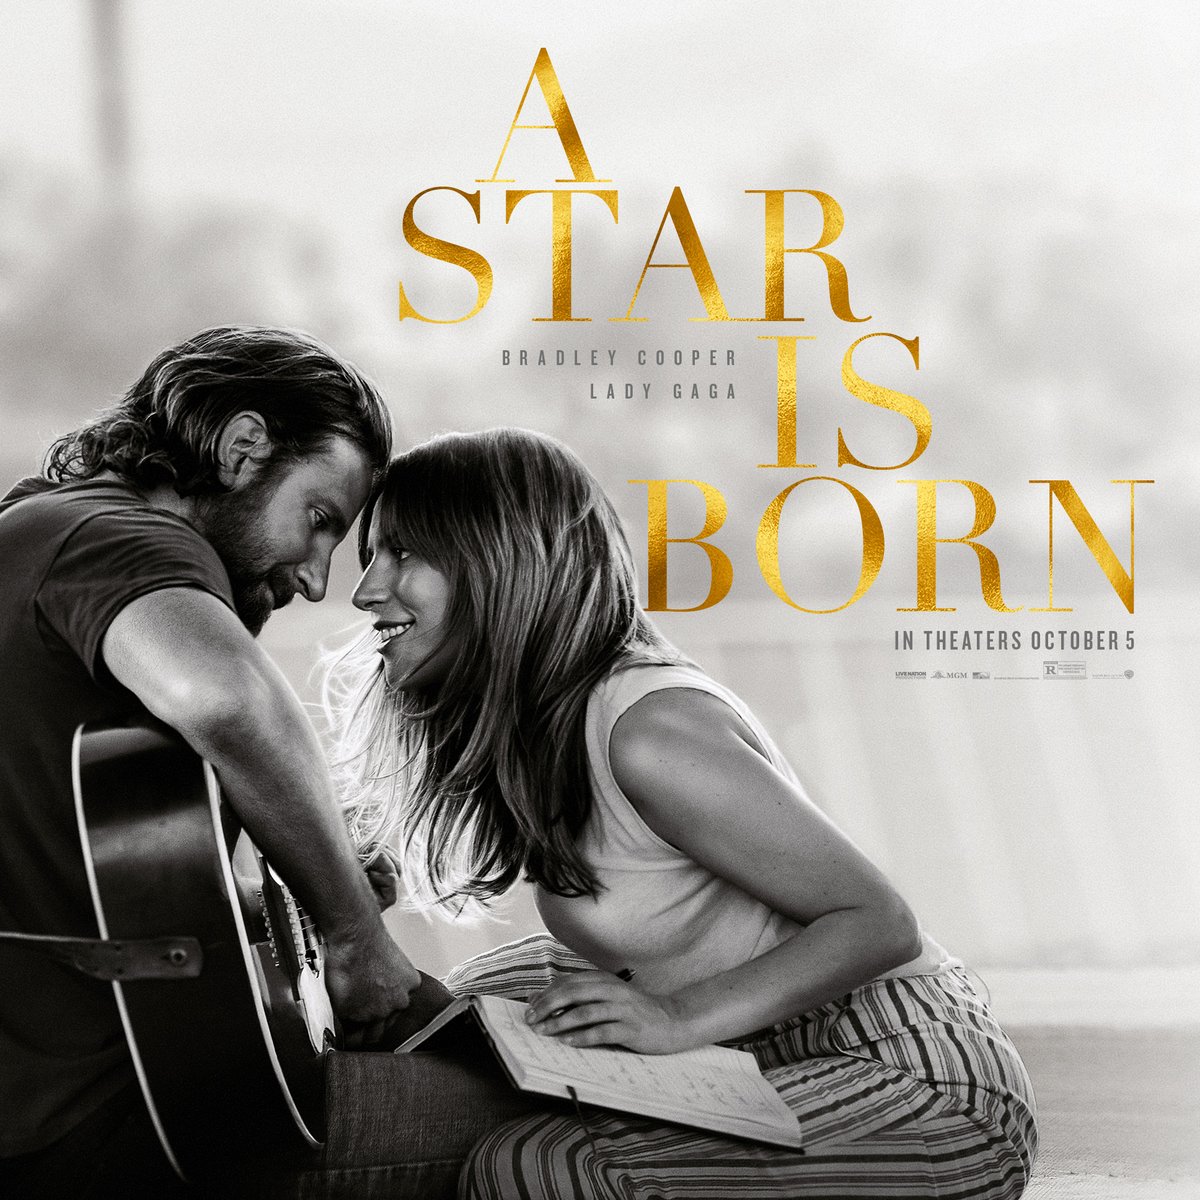 Frases y Diálogos del Cine: Frases de la película: A Star Is Born (Bradley  Cooper)